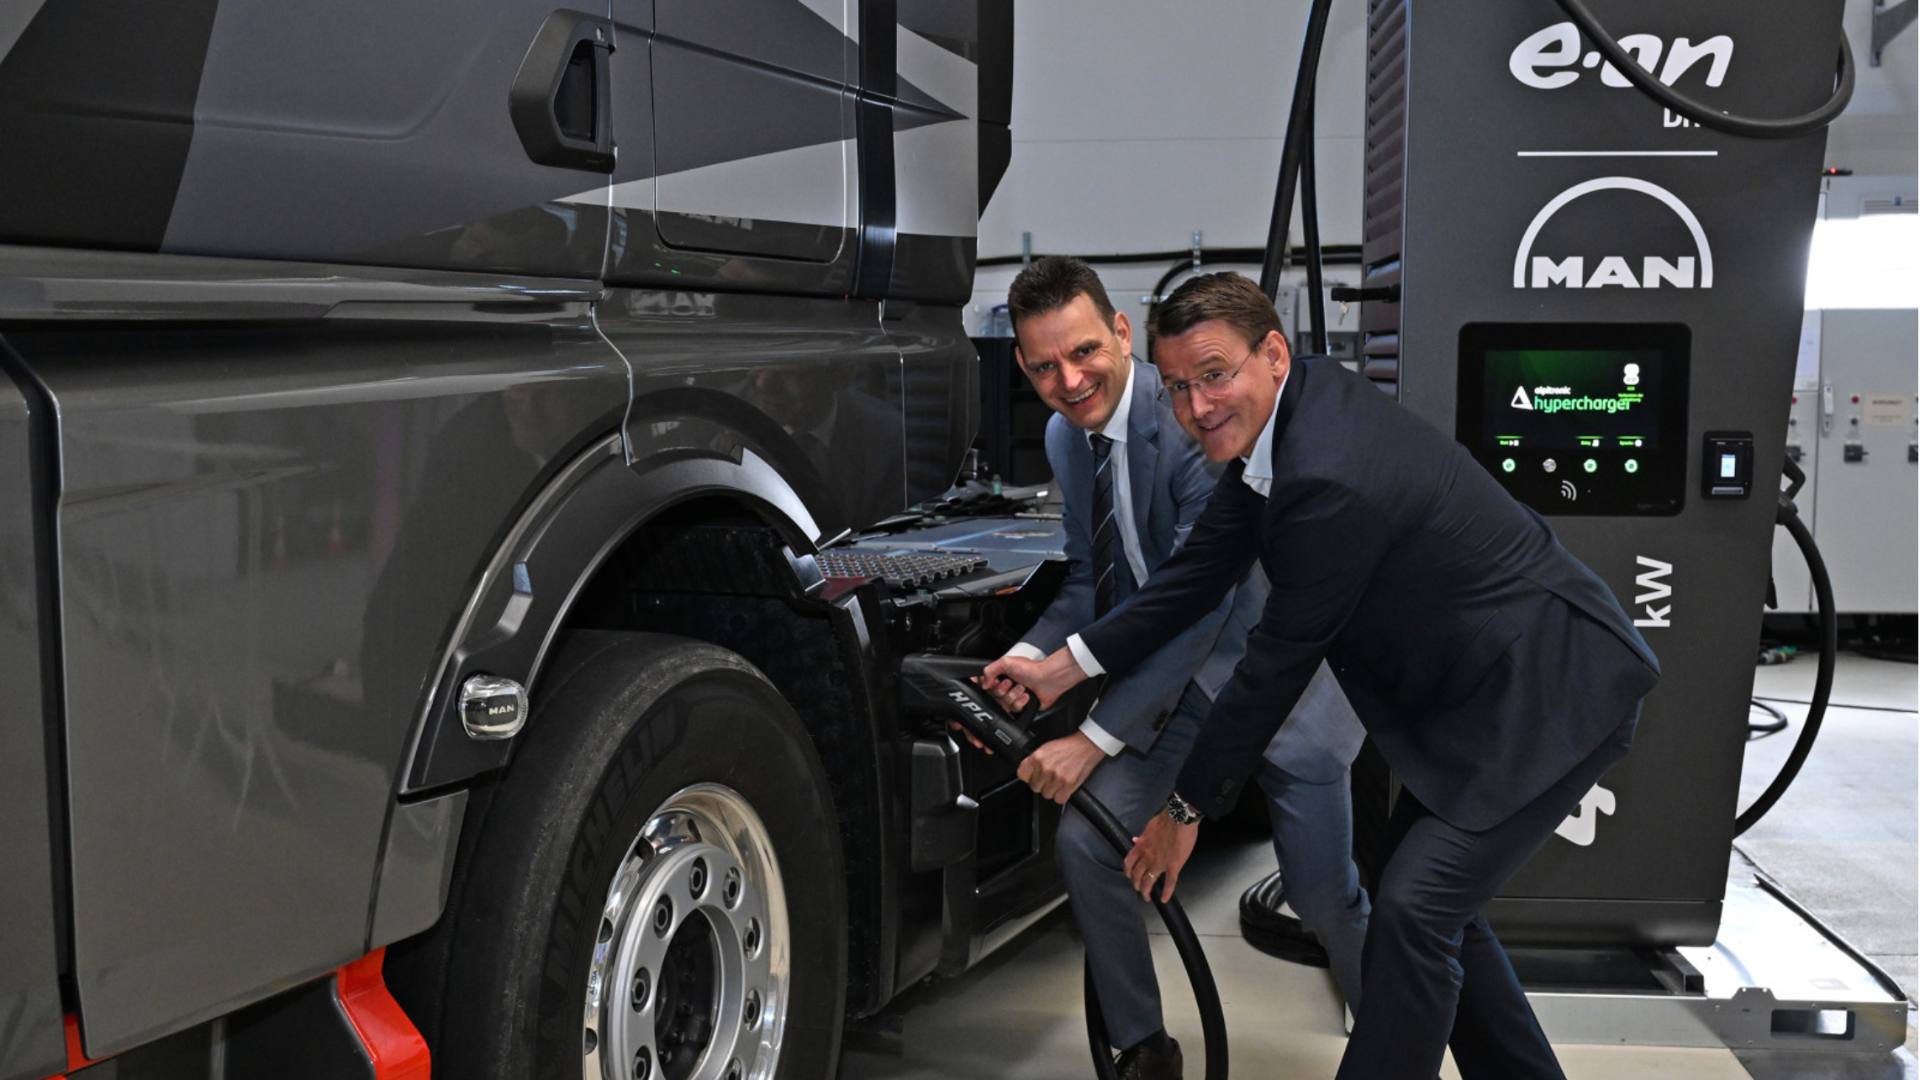 E.ON et MAN construisent un réseau de recharge publique pour les camions électriques en Europe